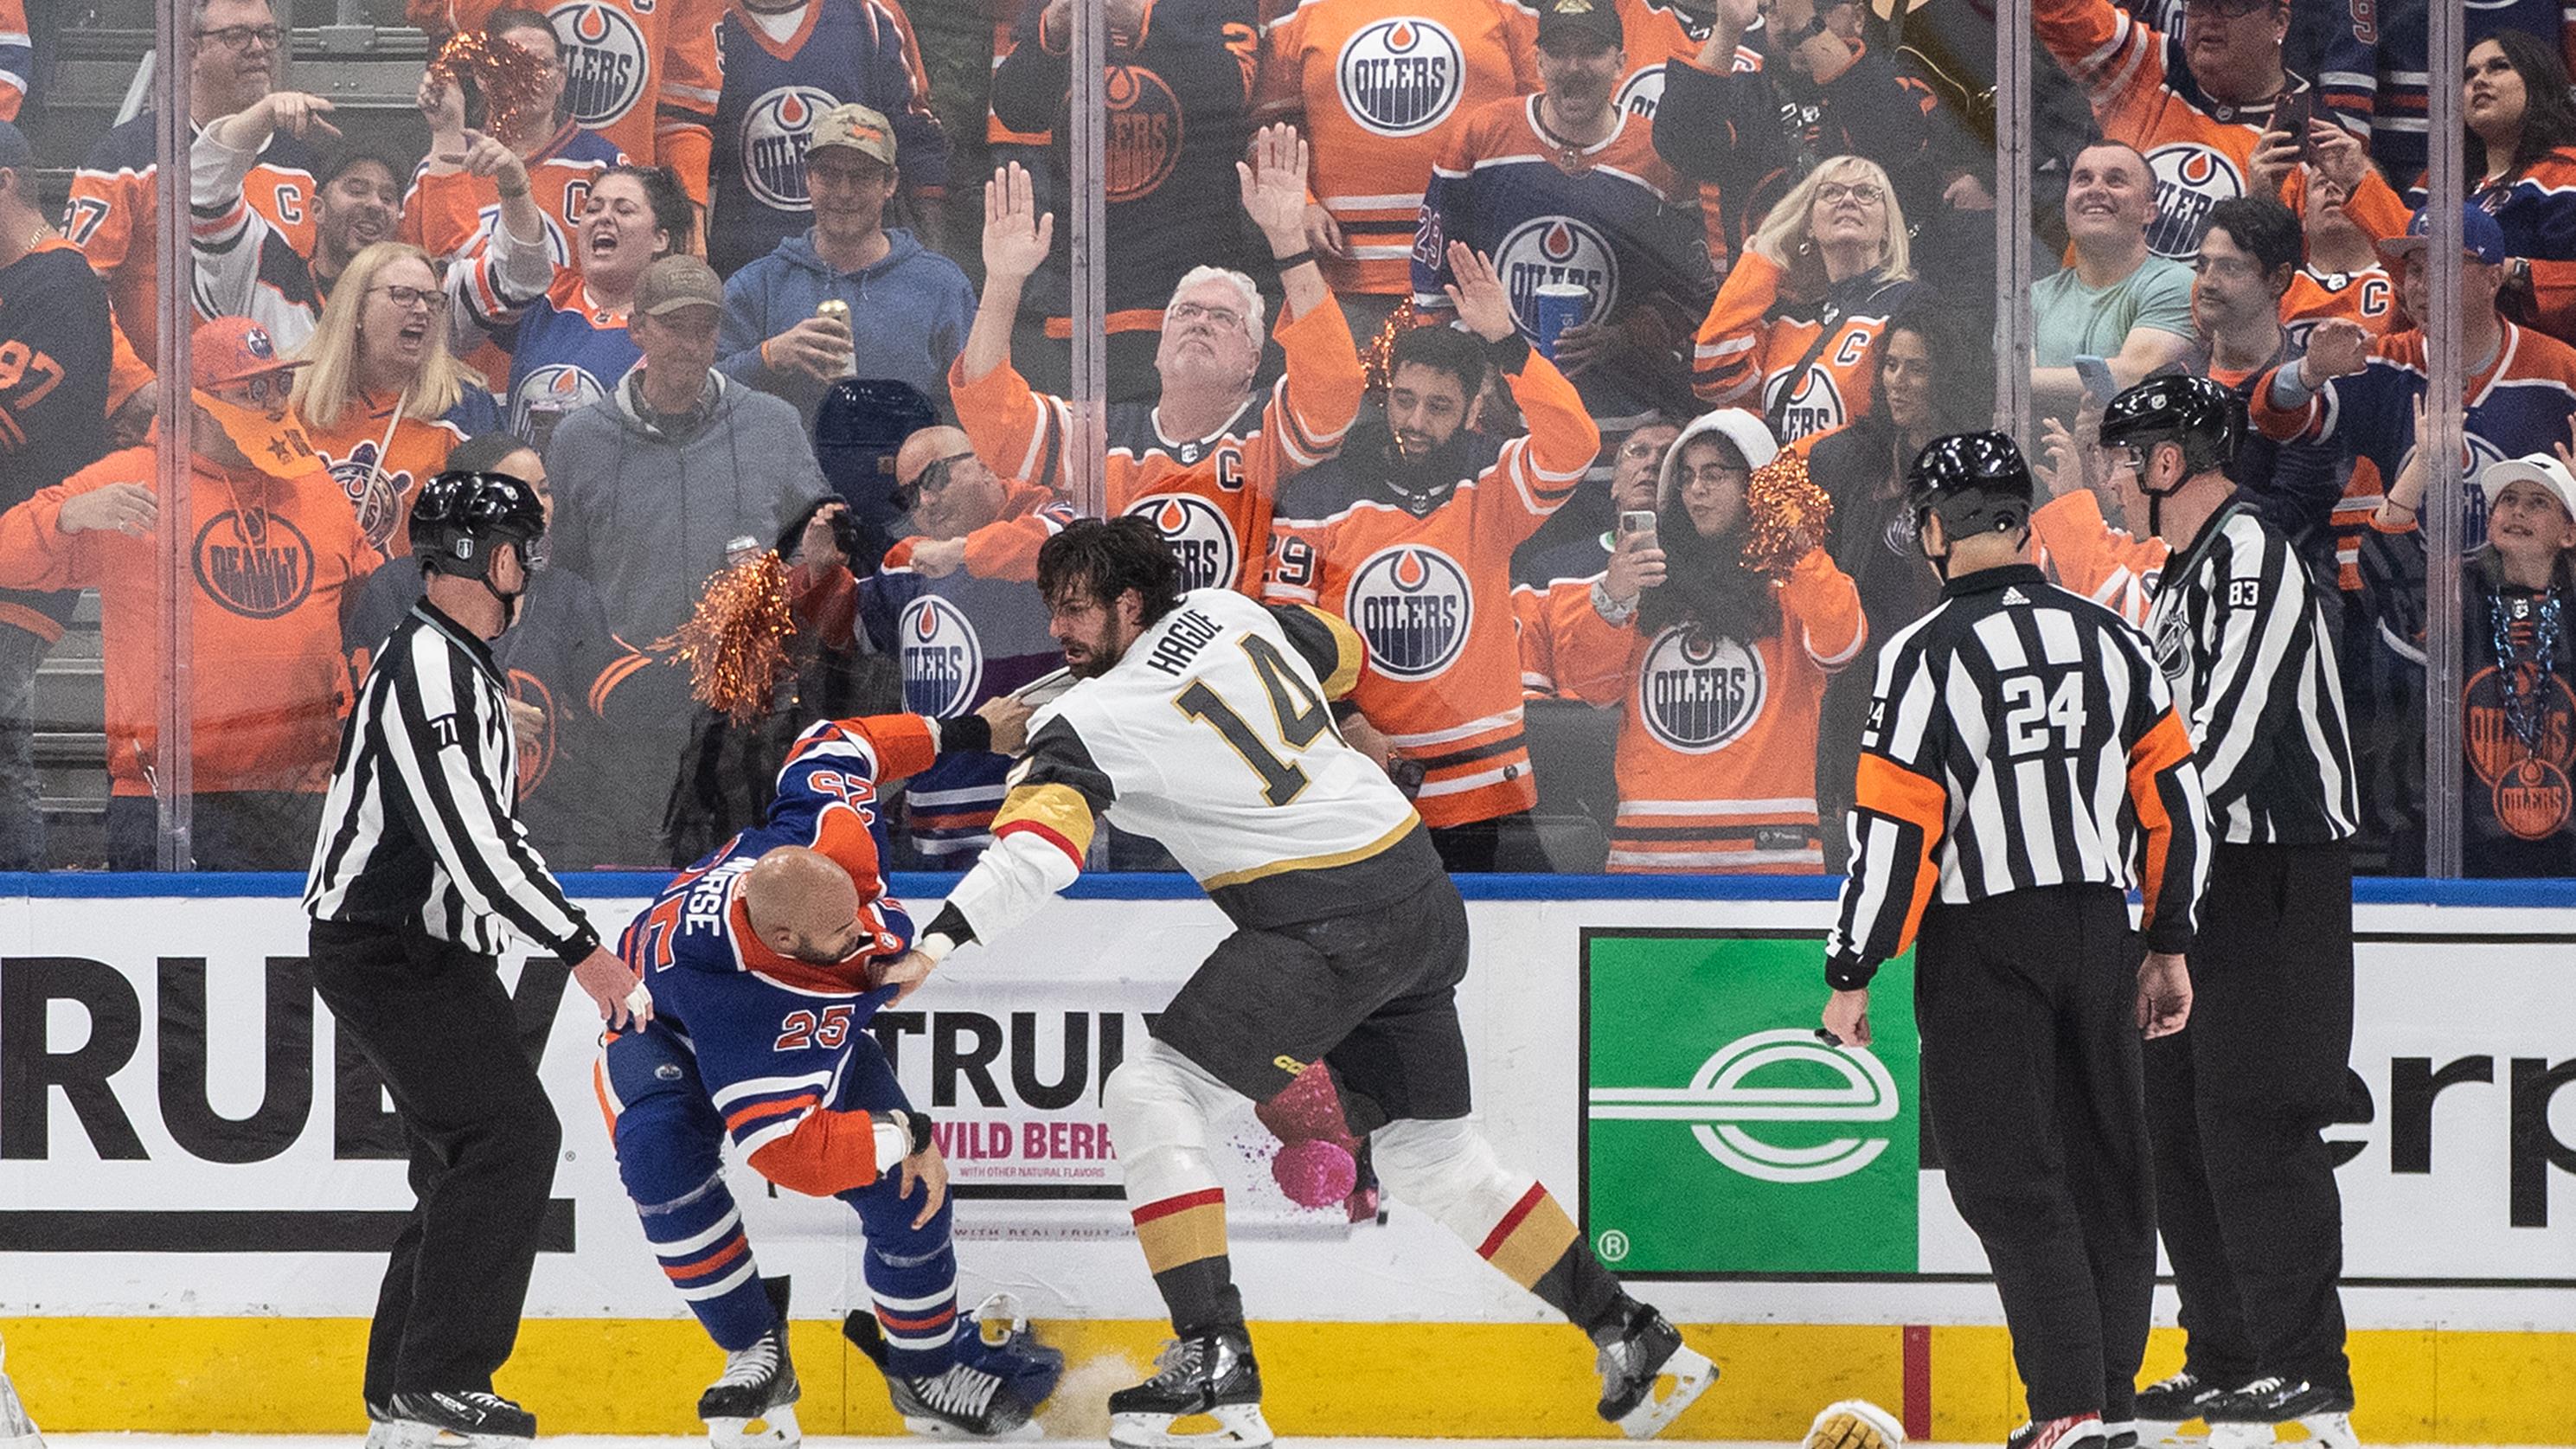 Panel hockey : suspension de Darnell Nurse et les Maple Leafs à l'échafaud
Panel hockey : suspension de Darnell Nurse et les Maple Leafs à l'échafaud